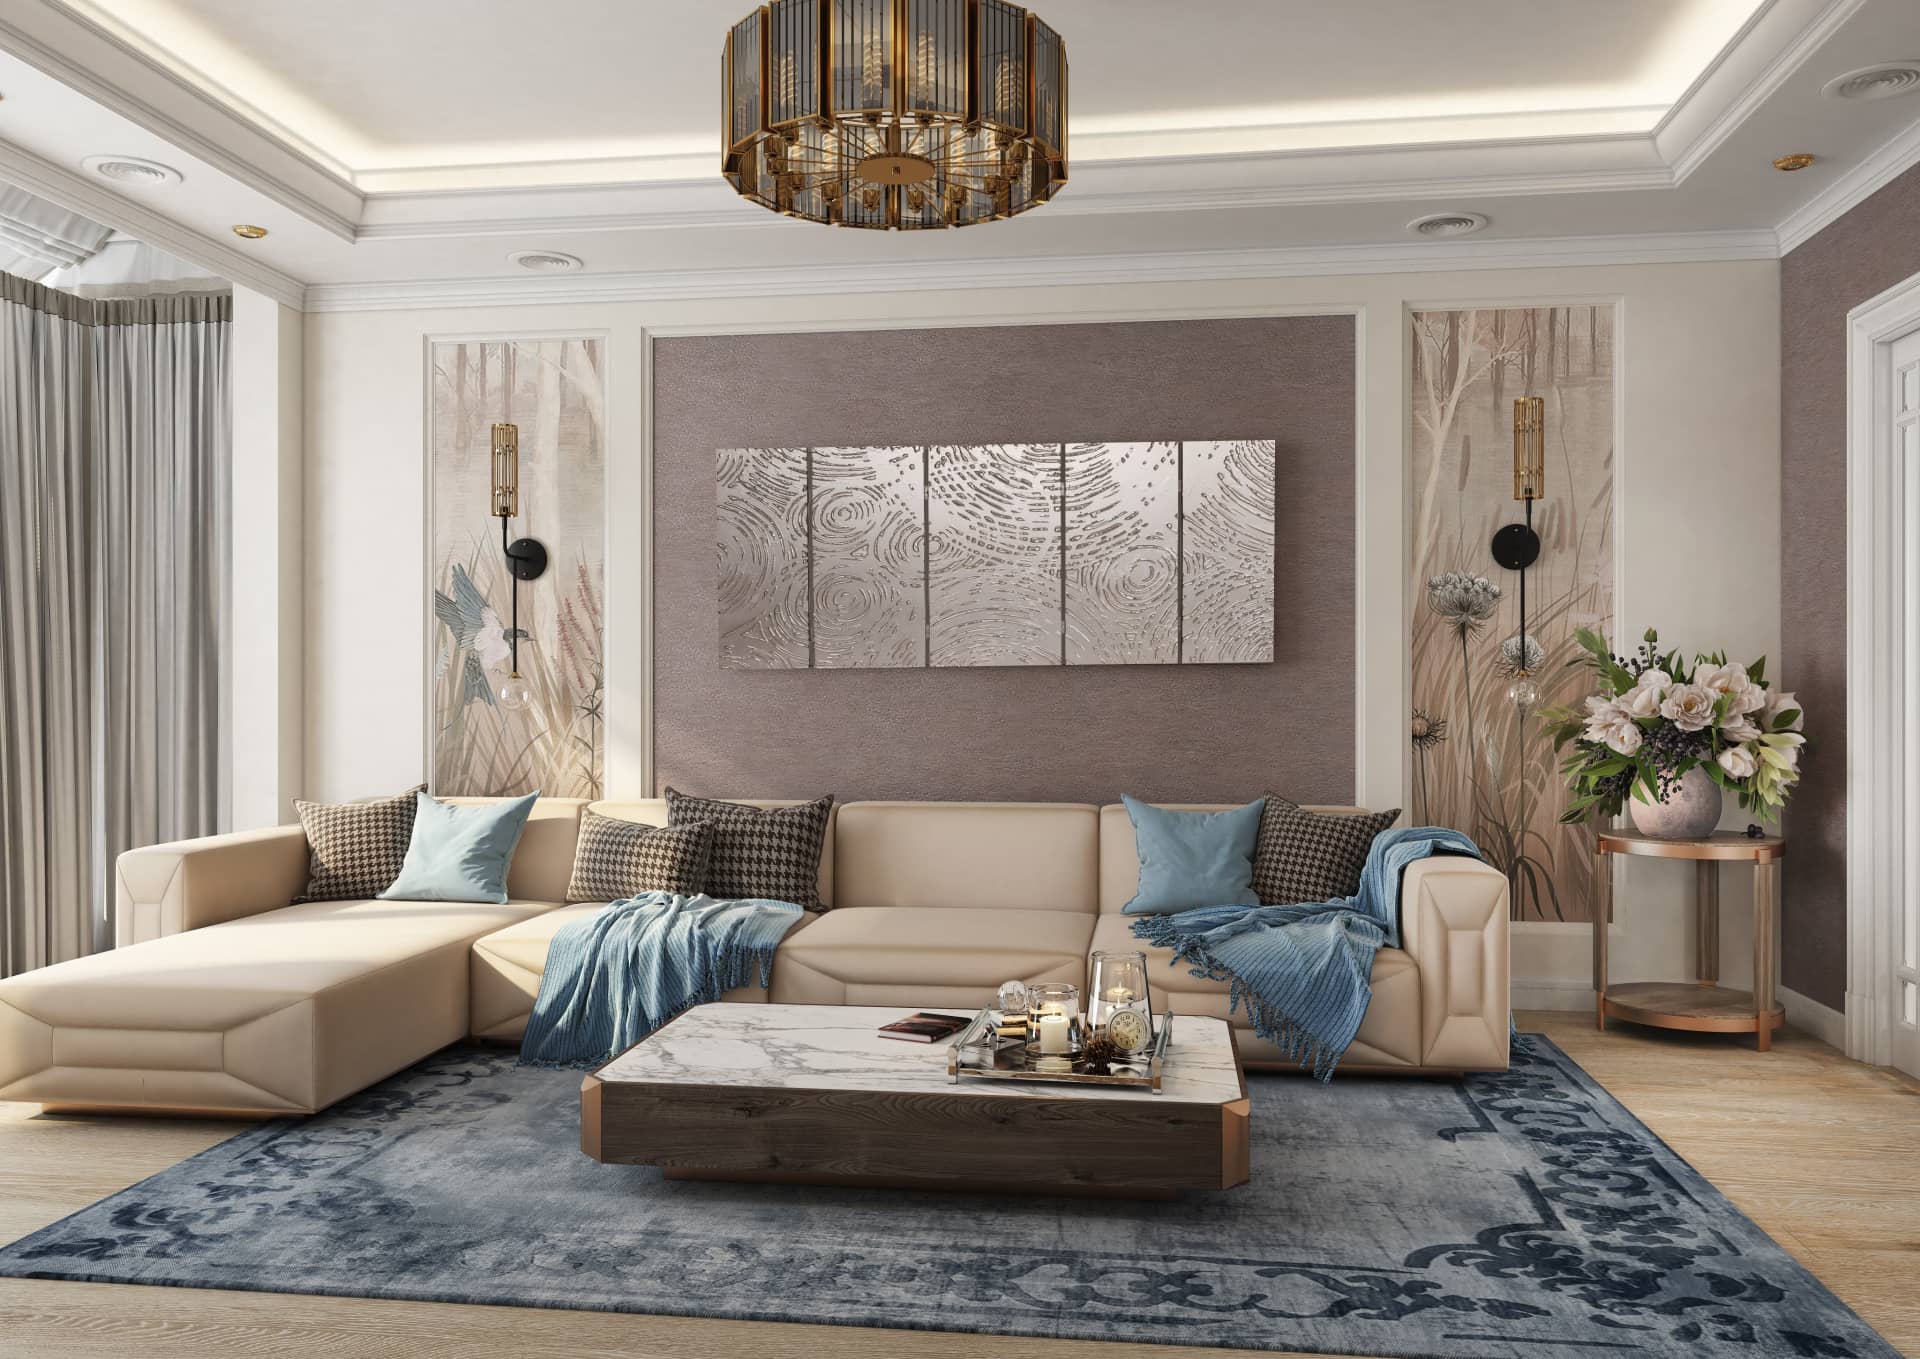 Оформление интерьера гостиной трехкомнатной квартиры в коричневый цвет в стиле современной классики. Фото № 56579.